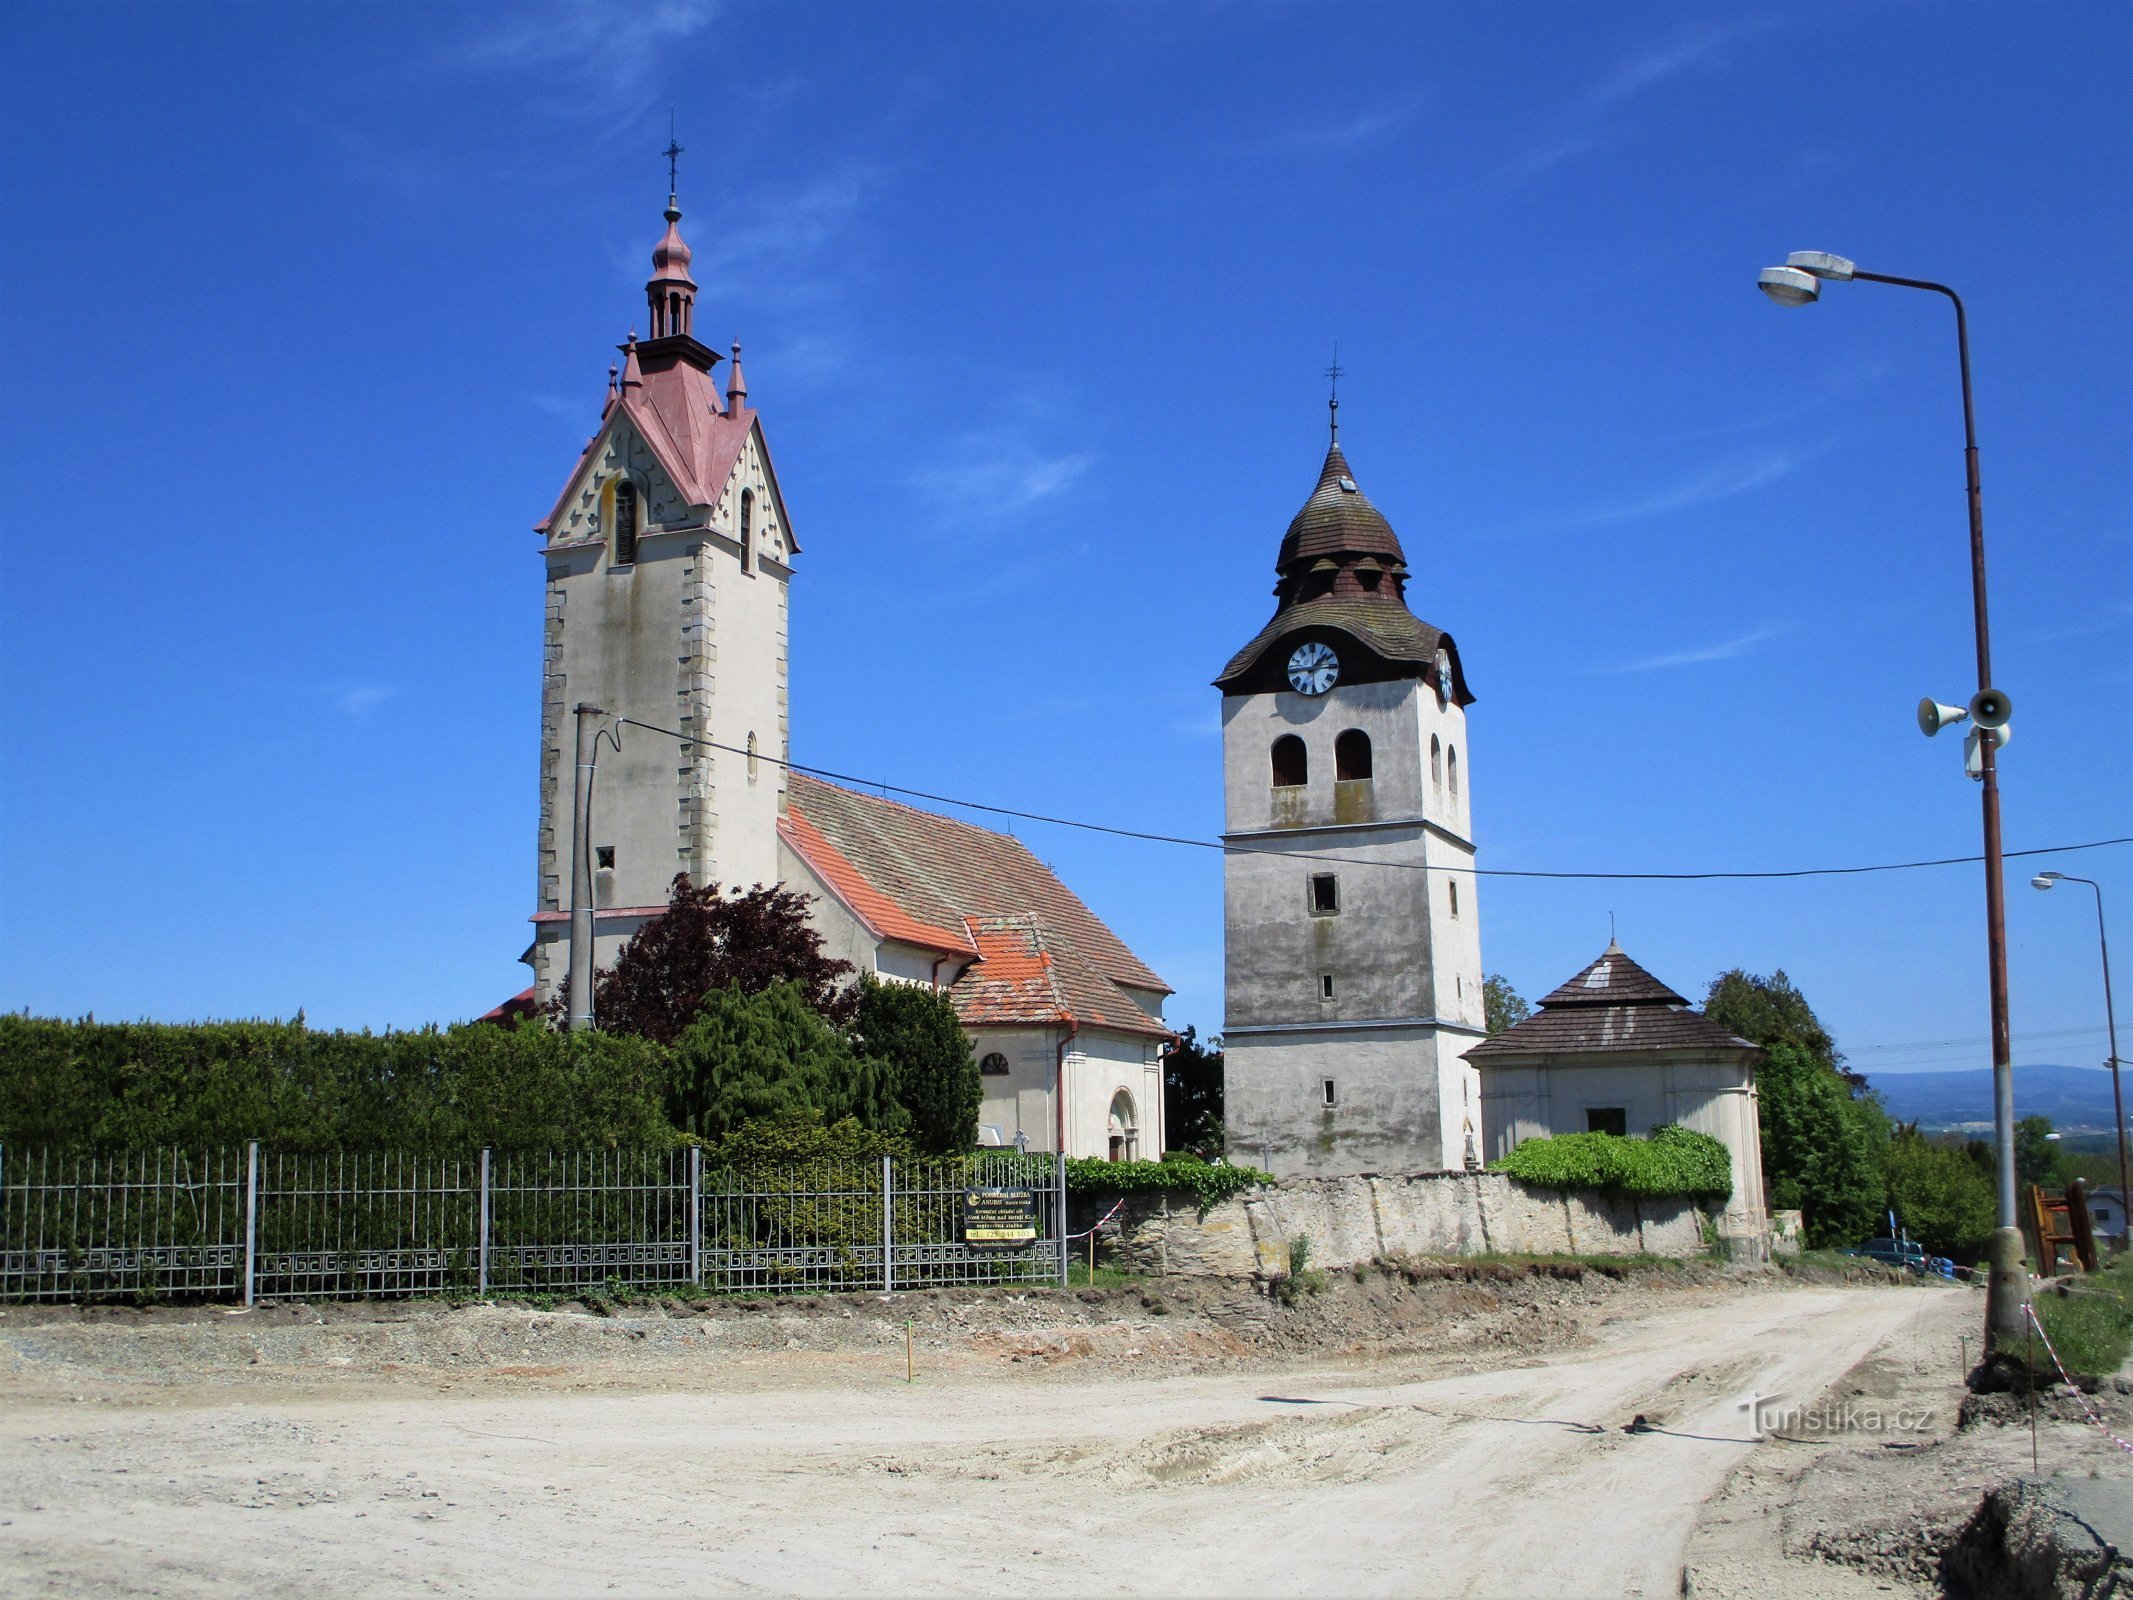 Церковь св. Святой Николай с колокольней (Богуславице-над-Метуей, 18.5.2020)